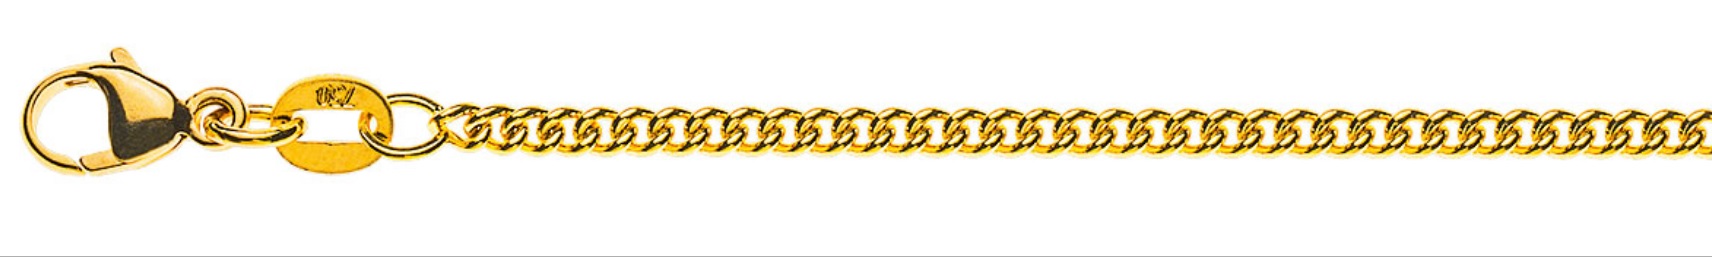 AURONOS Prestige Collier en or jaune 18K chaîne blindée ronde 42cm 2.1mm